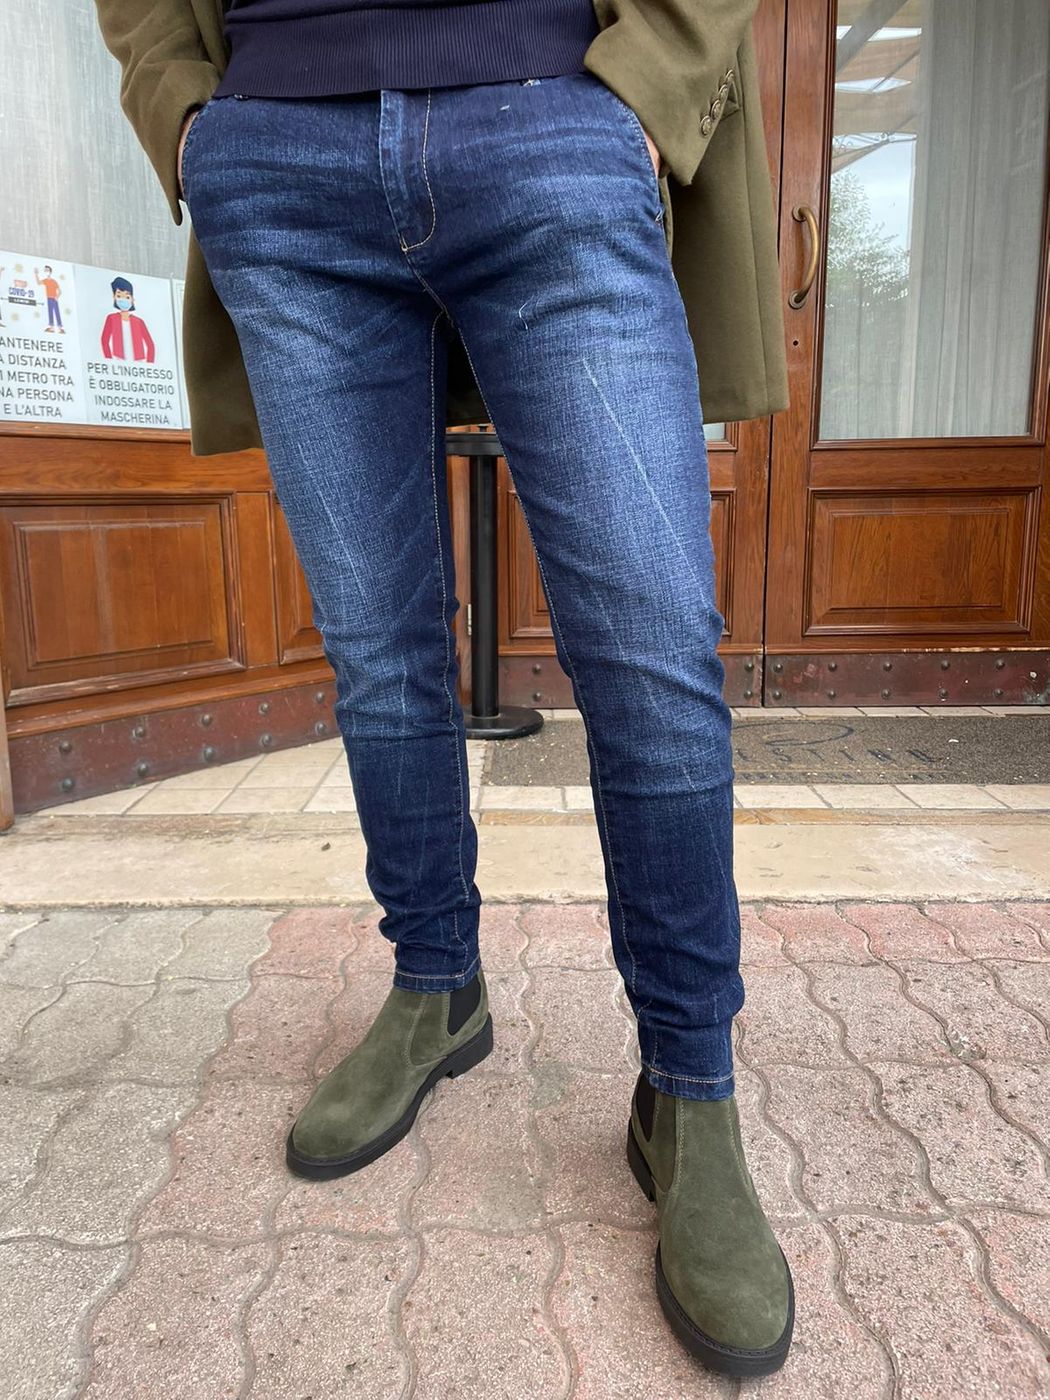 America capri pocket jeans in stretch fabric